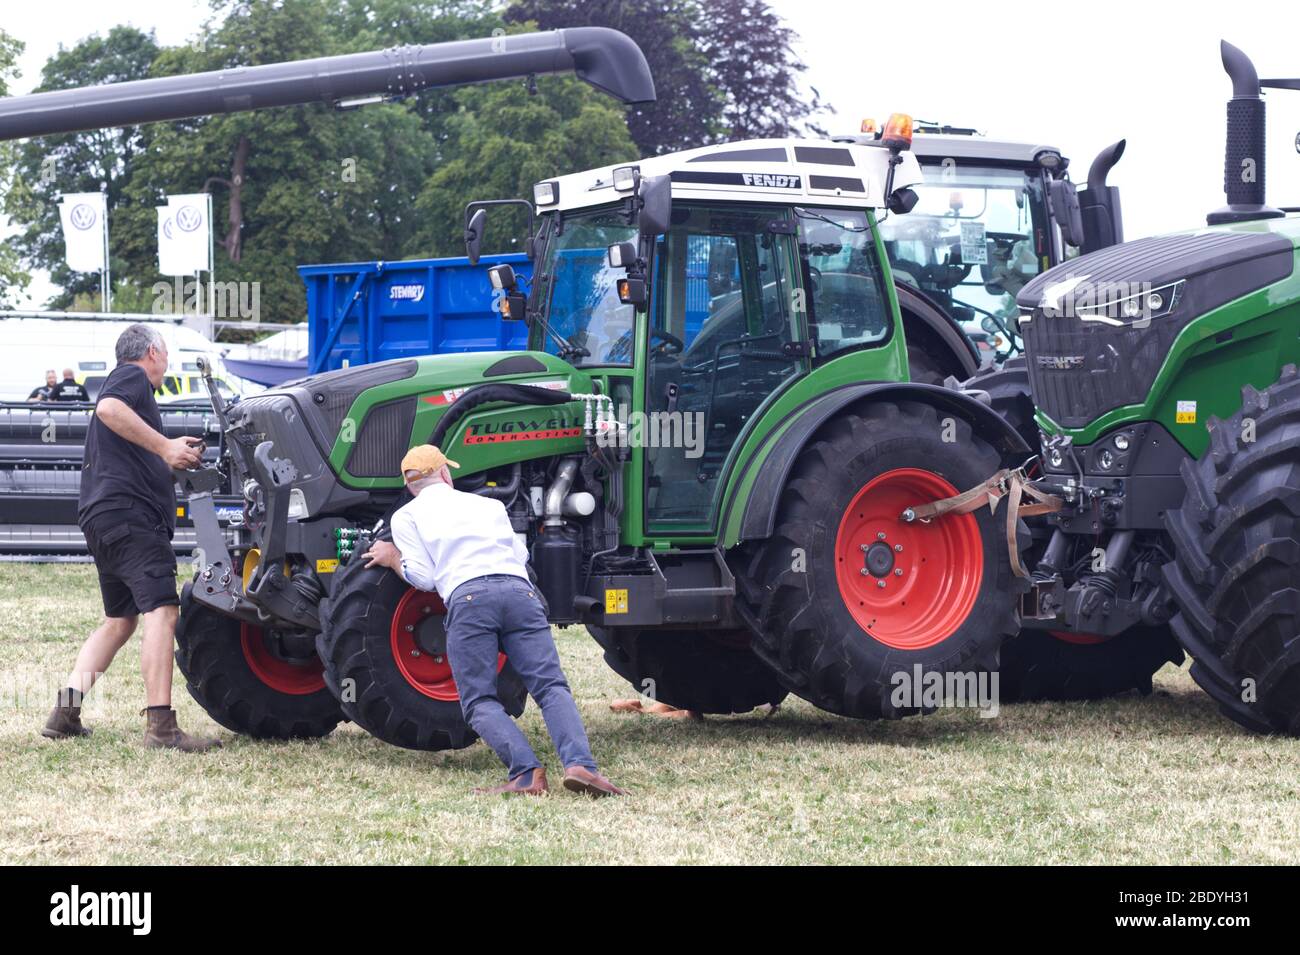 Männer schieben einen Fendt Traktor an seinen Platz, der an einem anderen Fendt Traktor befestigt ist. Stockfoto